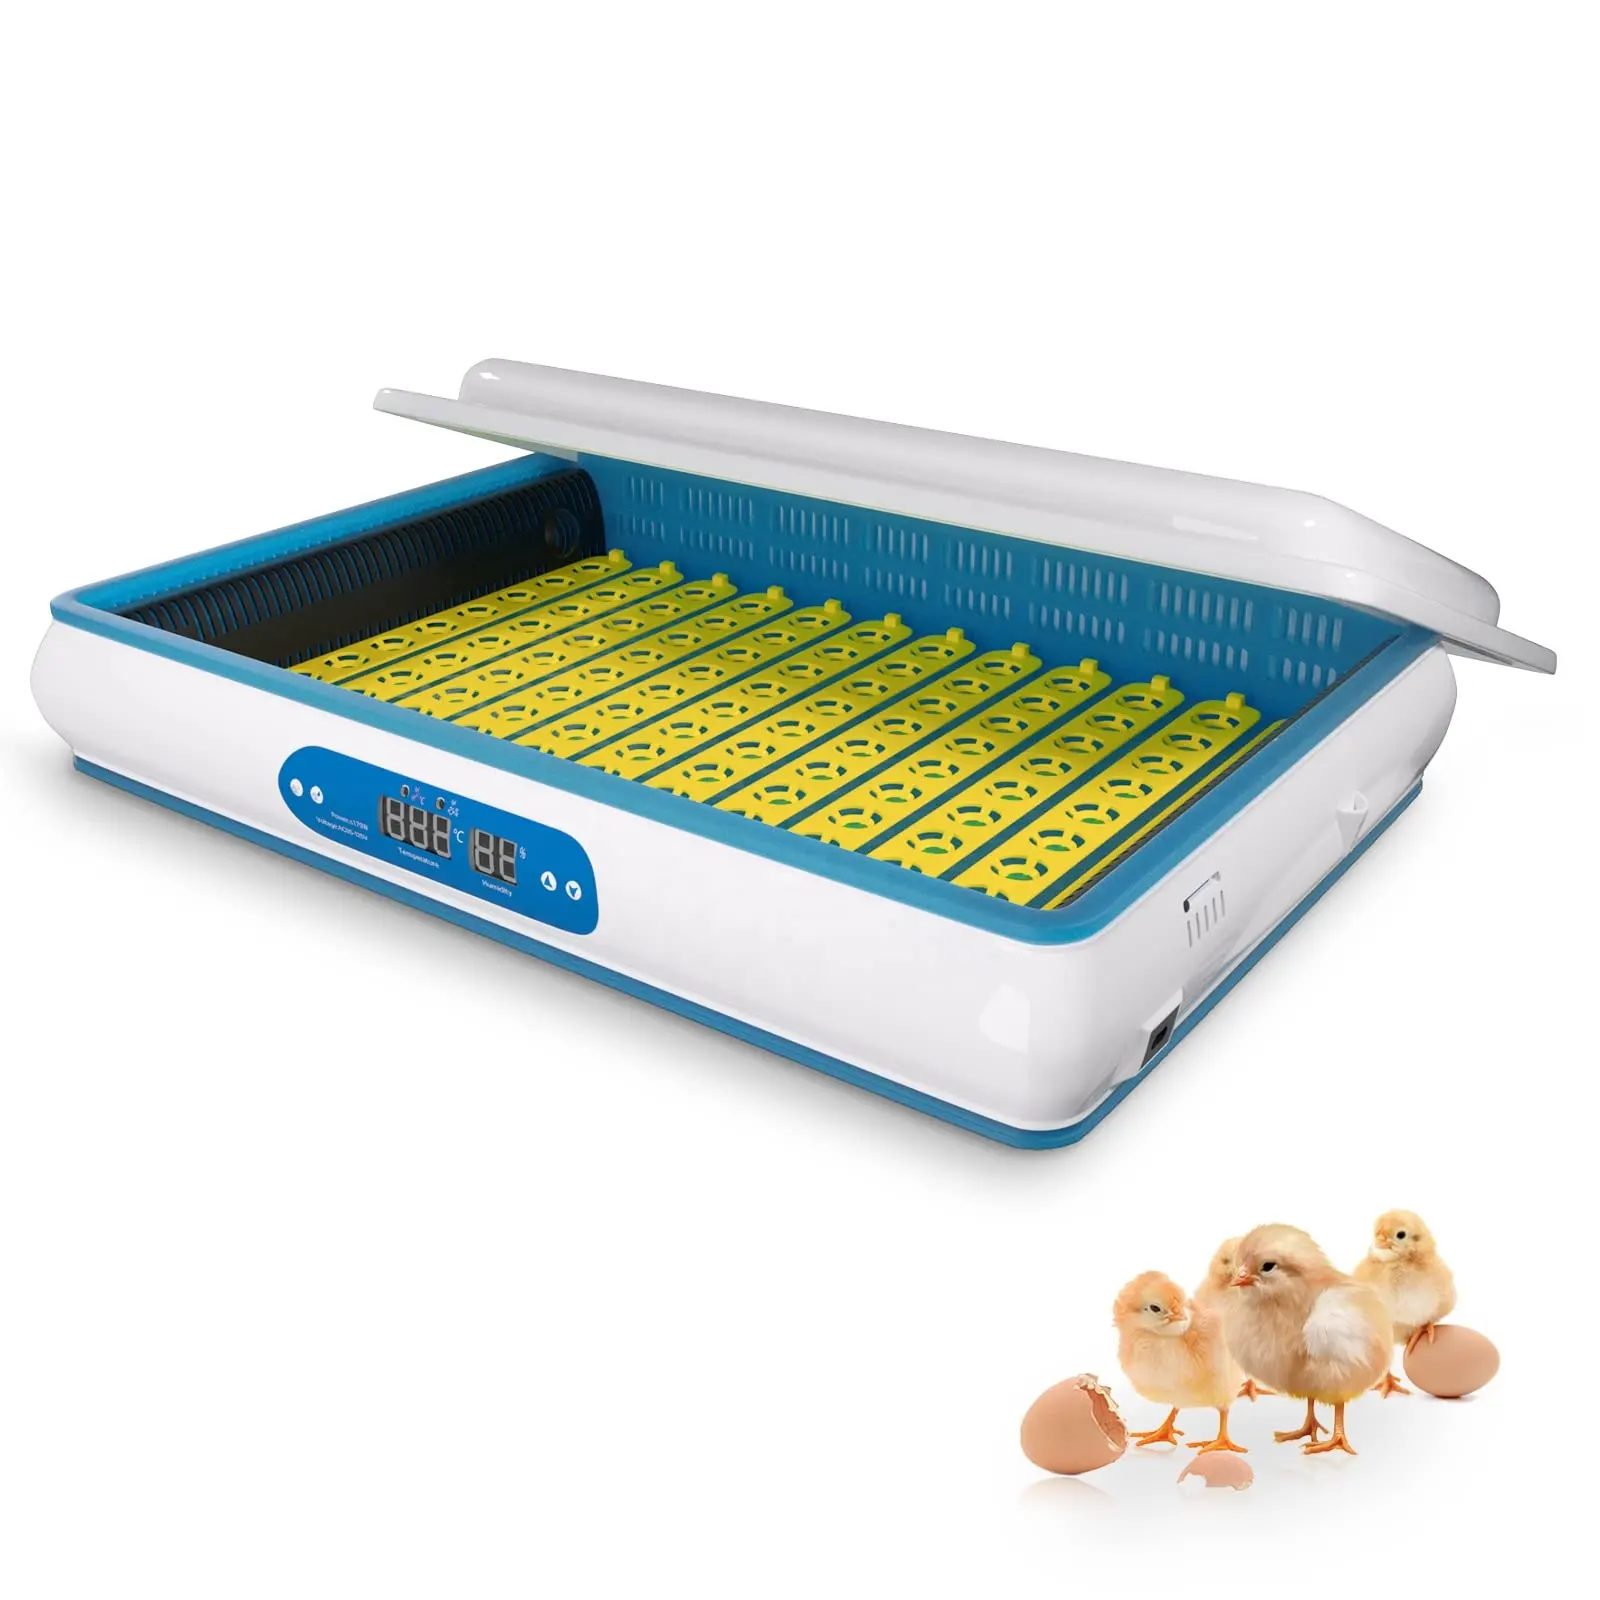 120 huevos a 1000 huevos hhd incubadora controlador de humedad incubadora de huevos de pollo